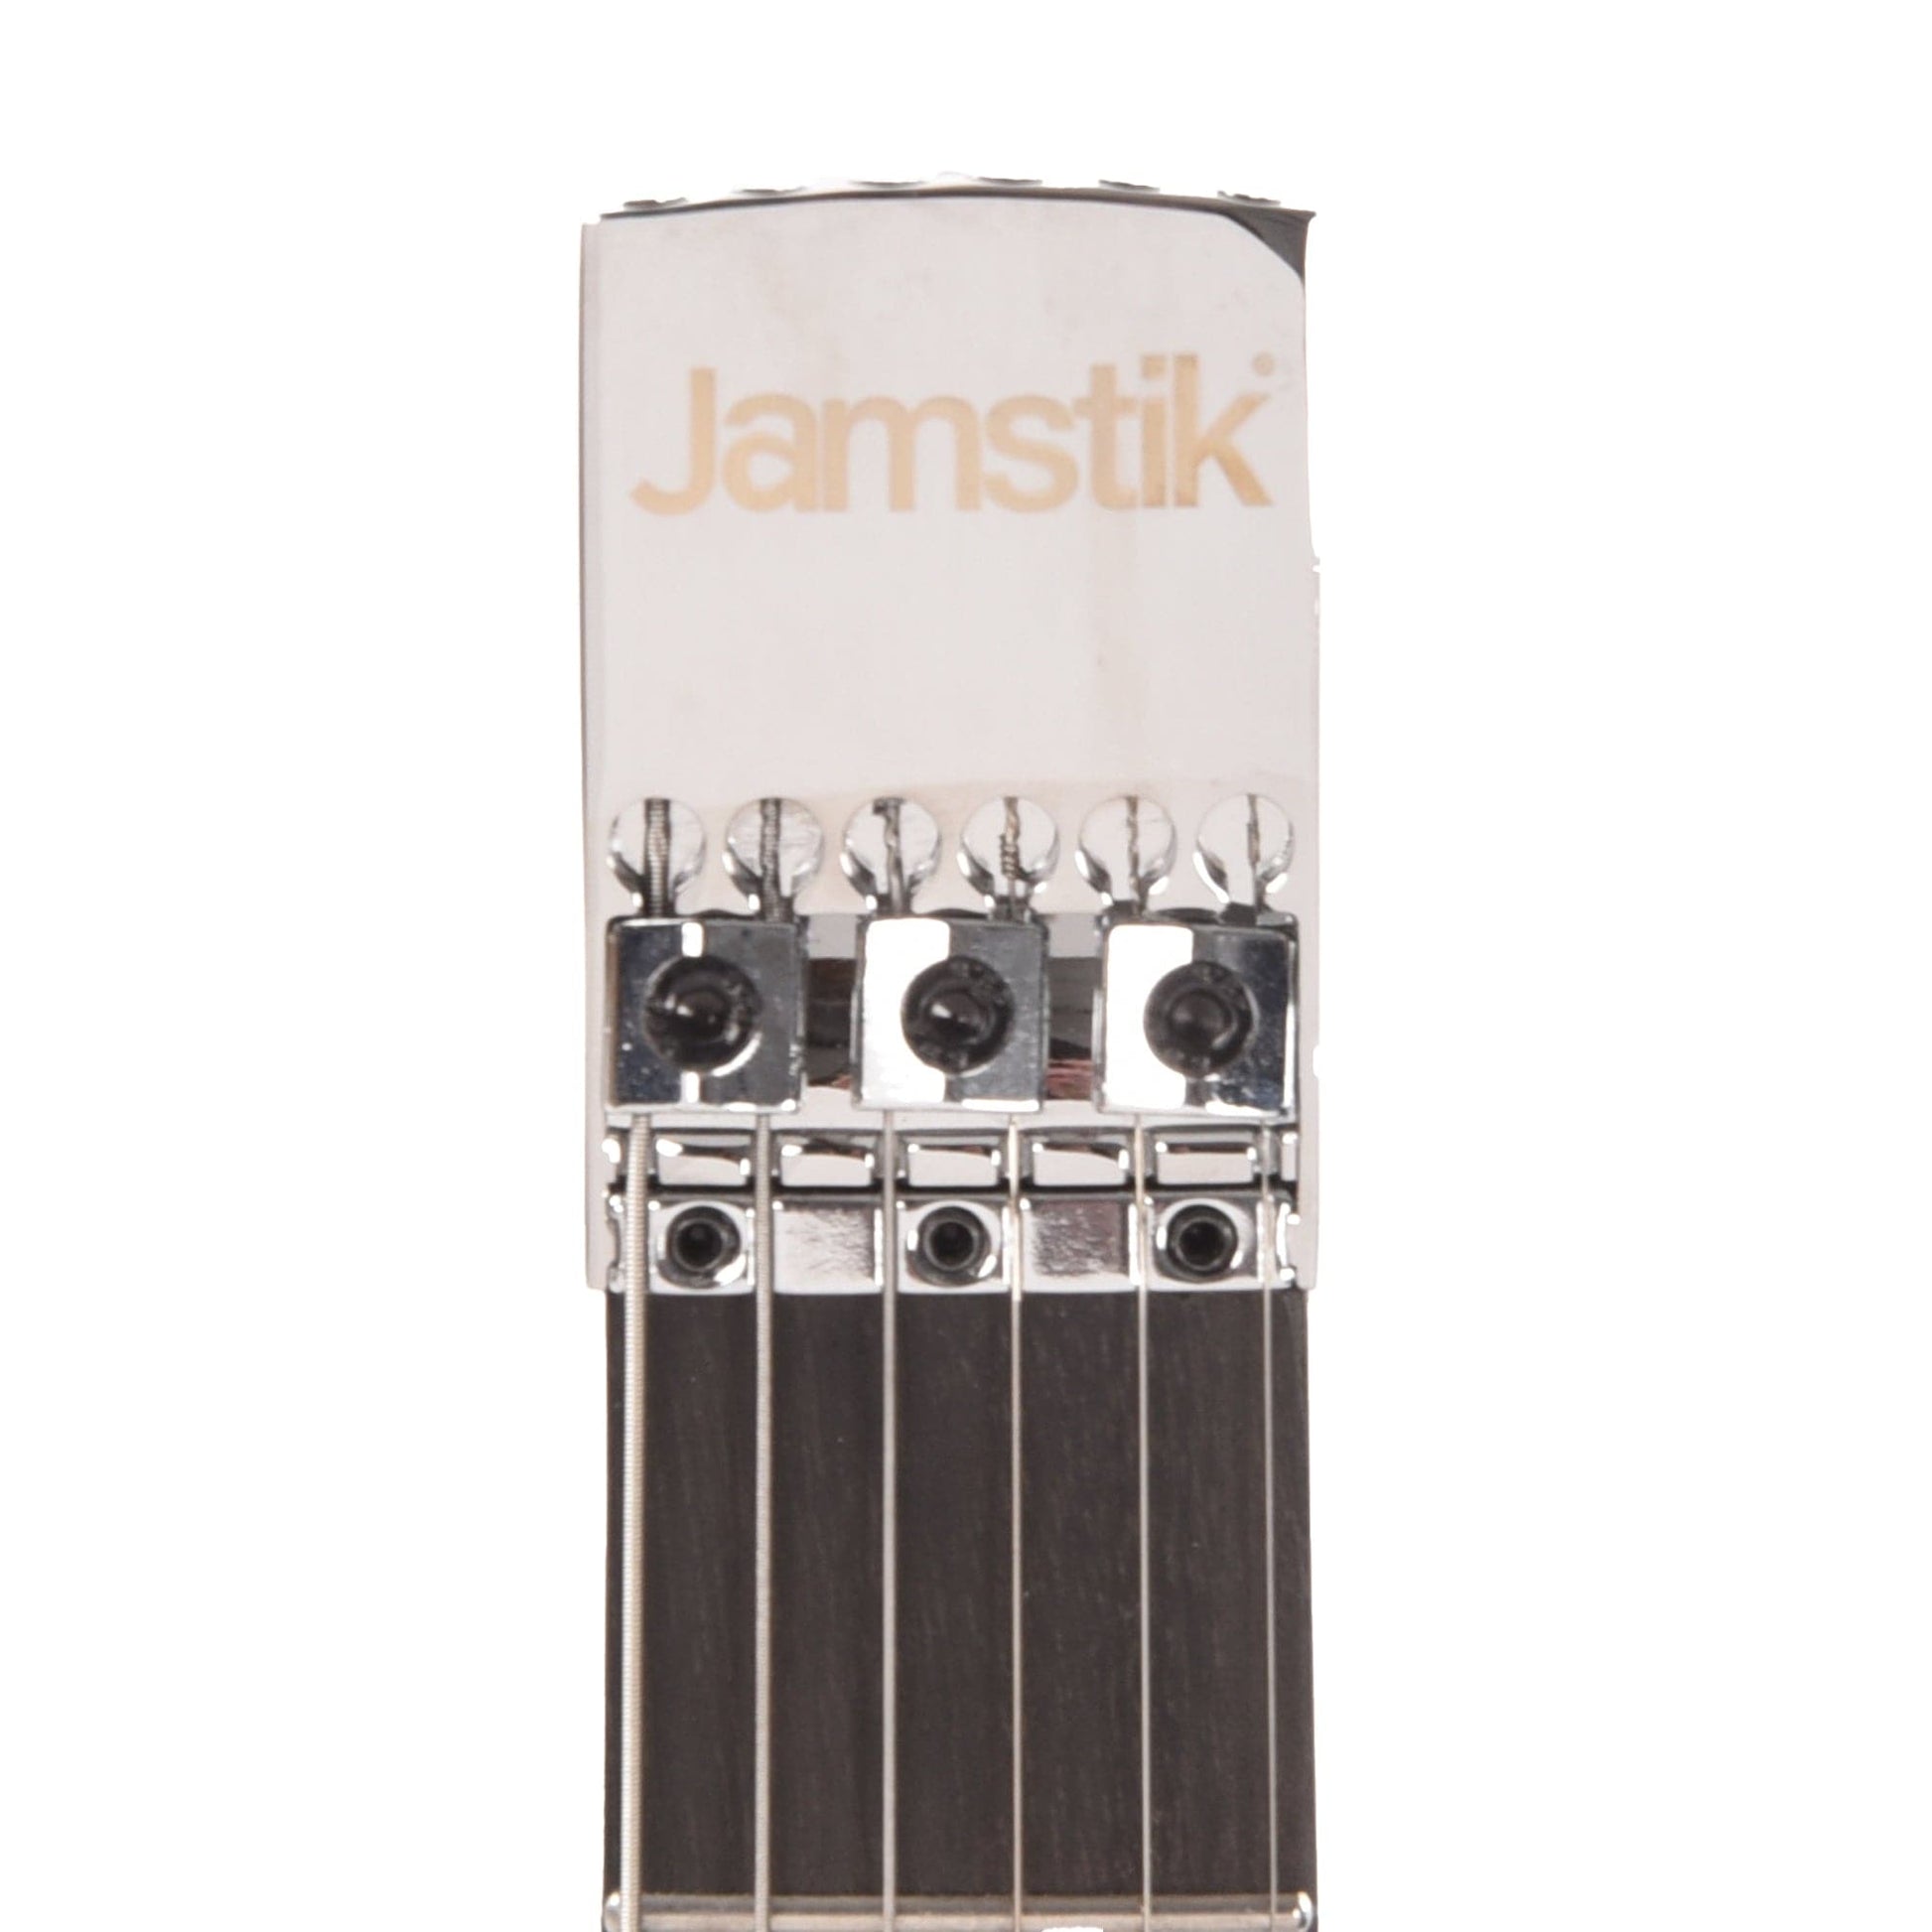 Jamstik Studio MIDI Guitar Matte Pink Electric Guitars / Solid Body